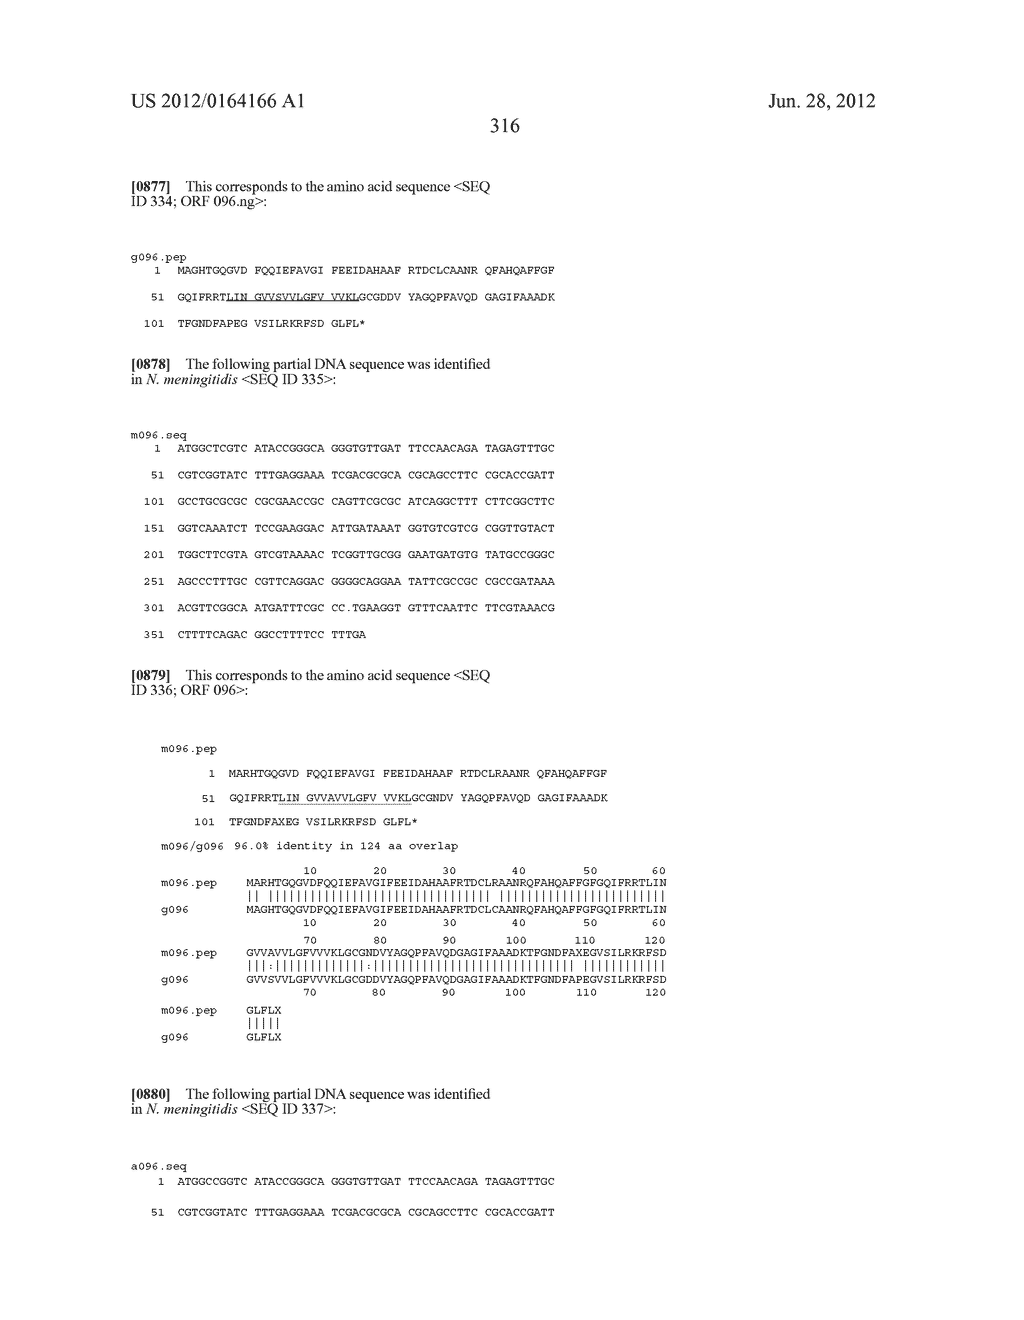 NEISSERIA MENINGITIDIS ANTIGENS AND COMPOSITIONS - diagram, schematic, and image 348